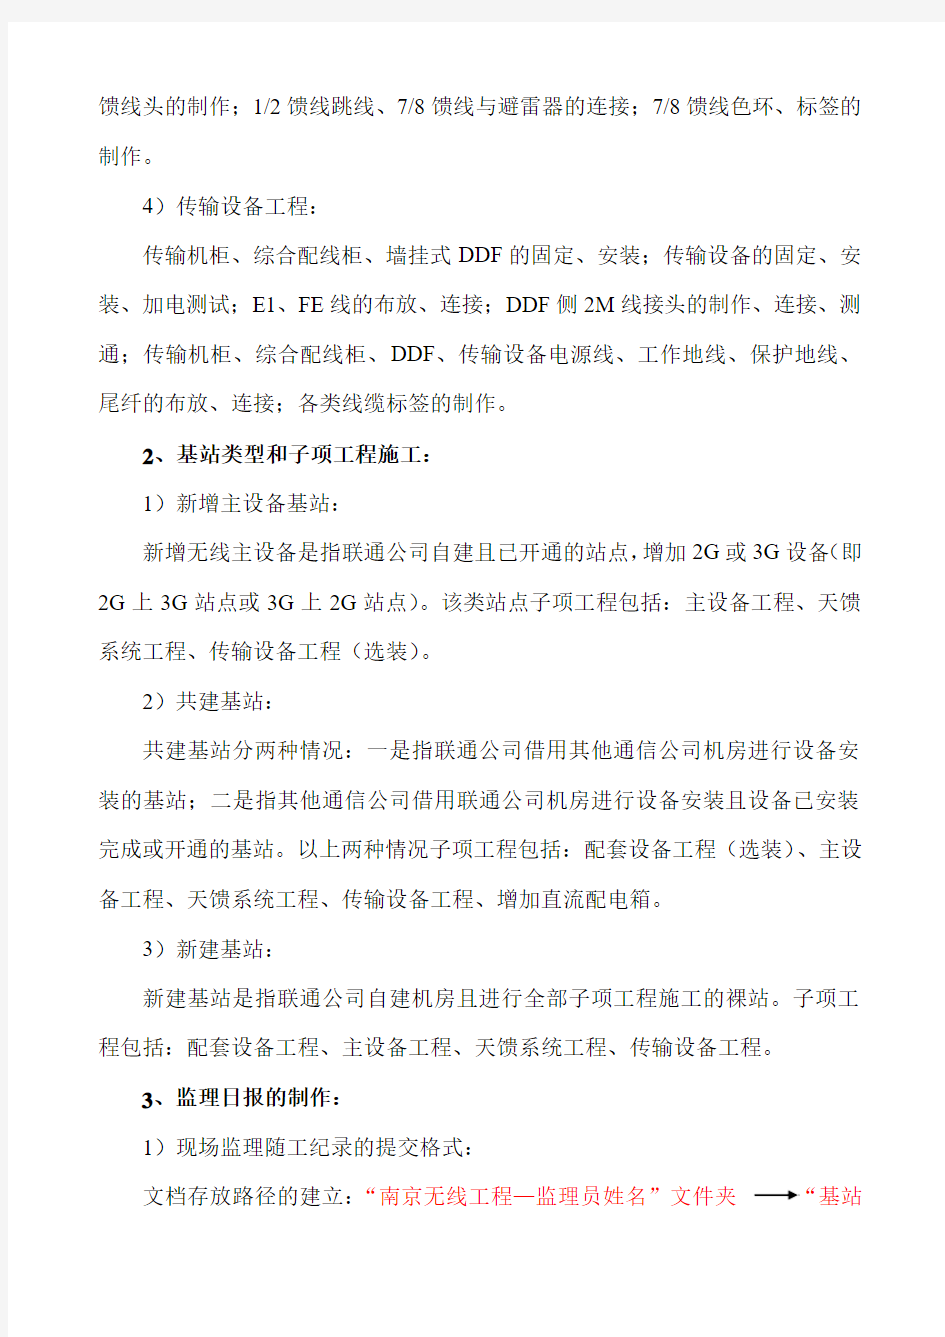 江苏项目部南京无线工程量化监理细则要求